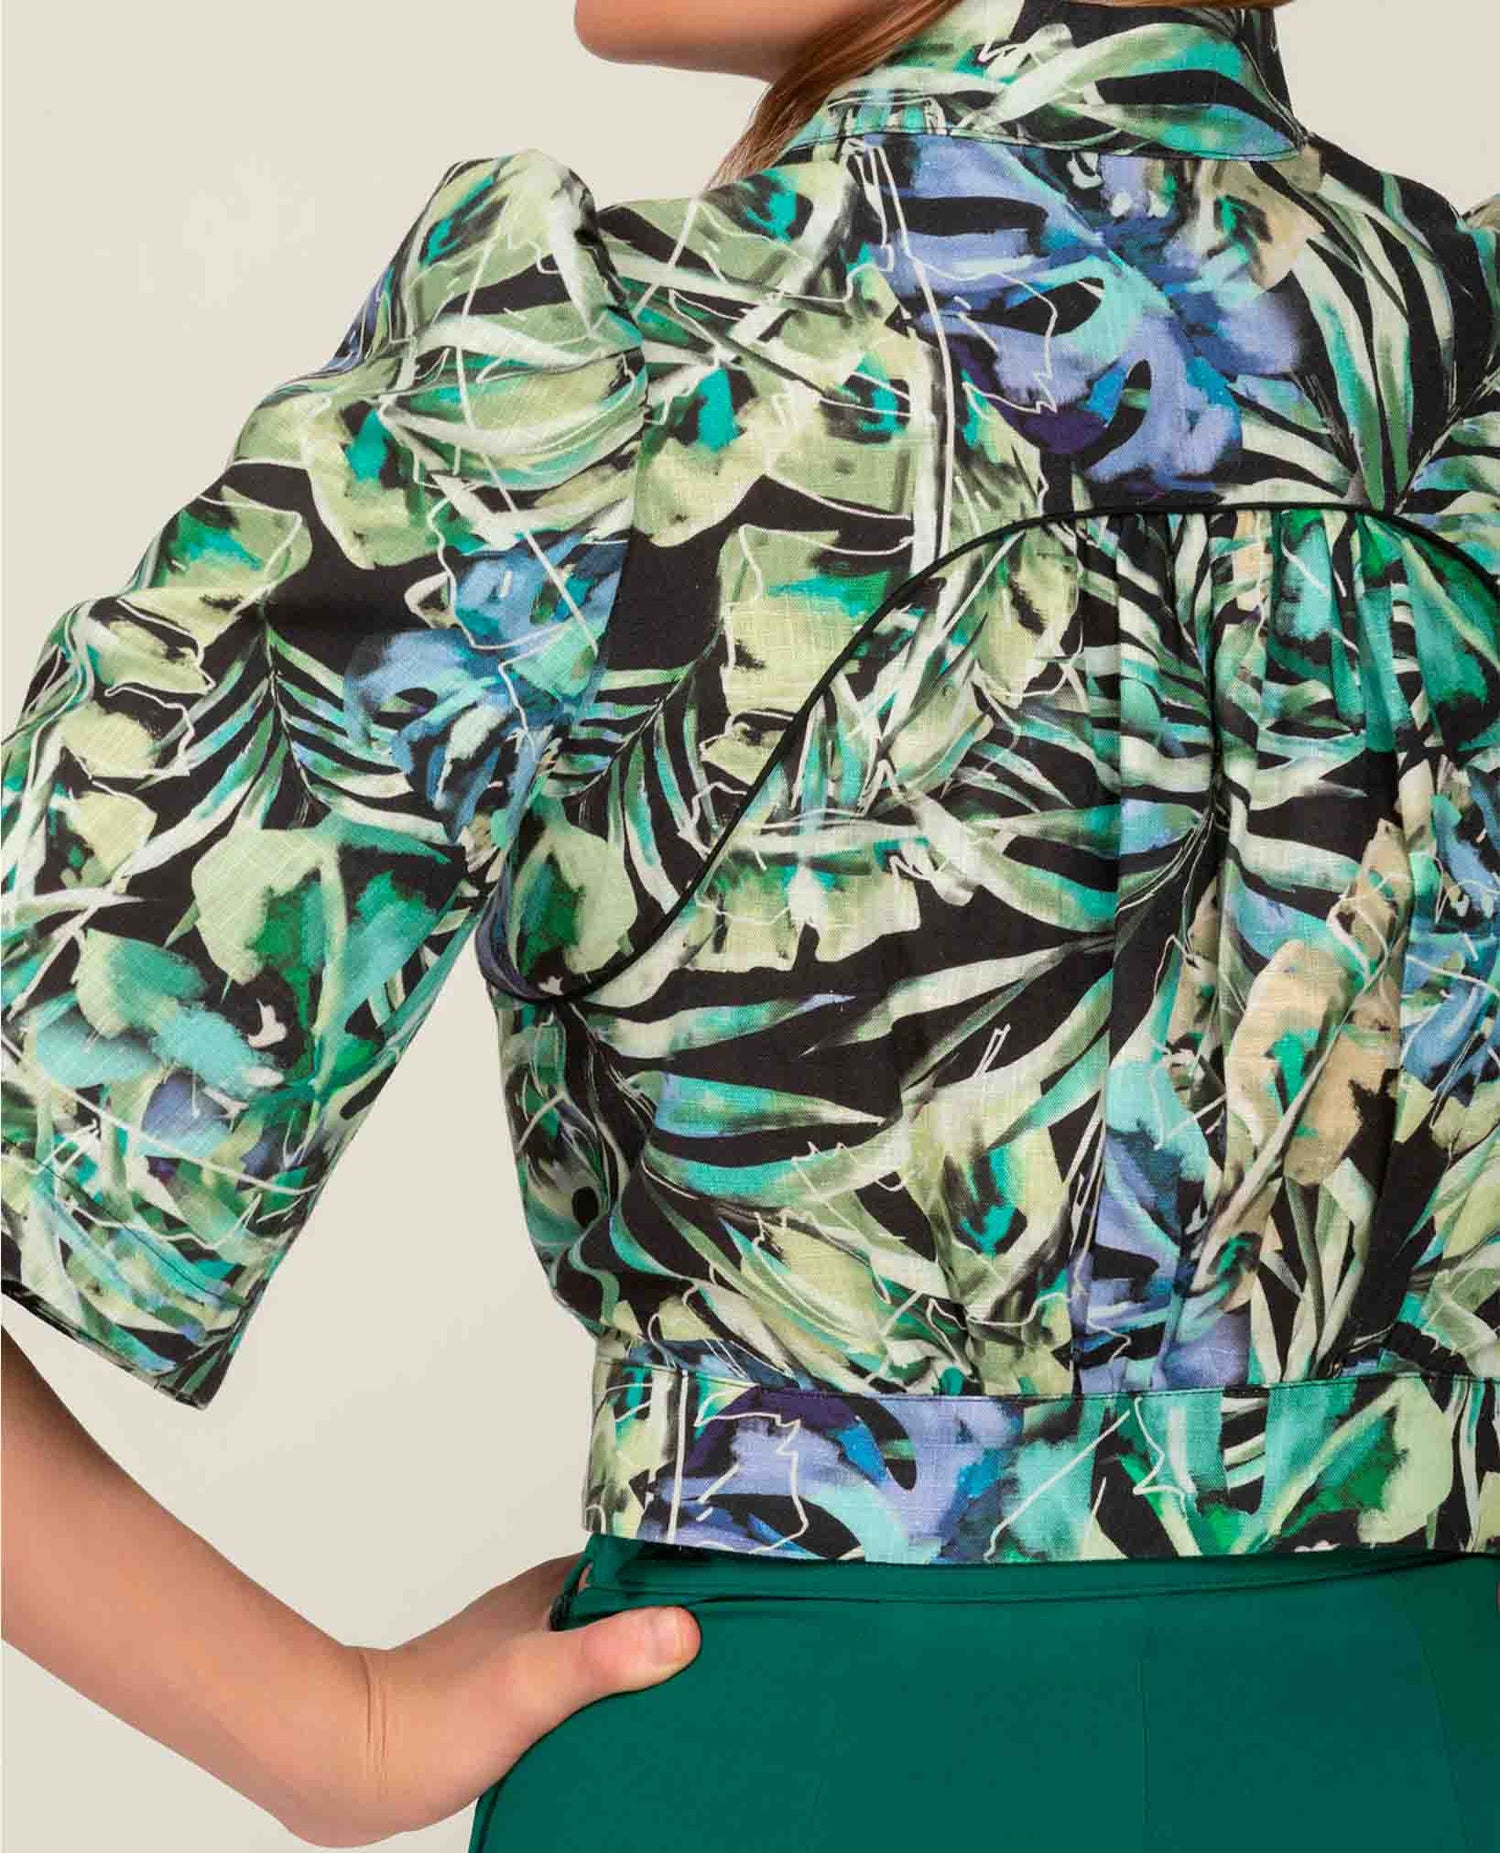 Haut style Blouse à manches bouffantes avec Zip en Viscose imprimée tropical-Hauts- Blouse-blouse femme-chemise-EMDORIA PARIS